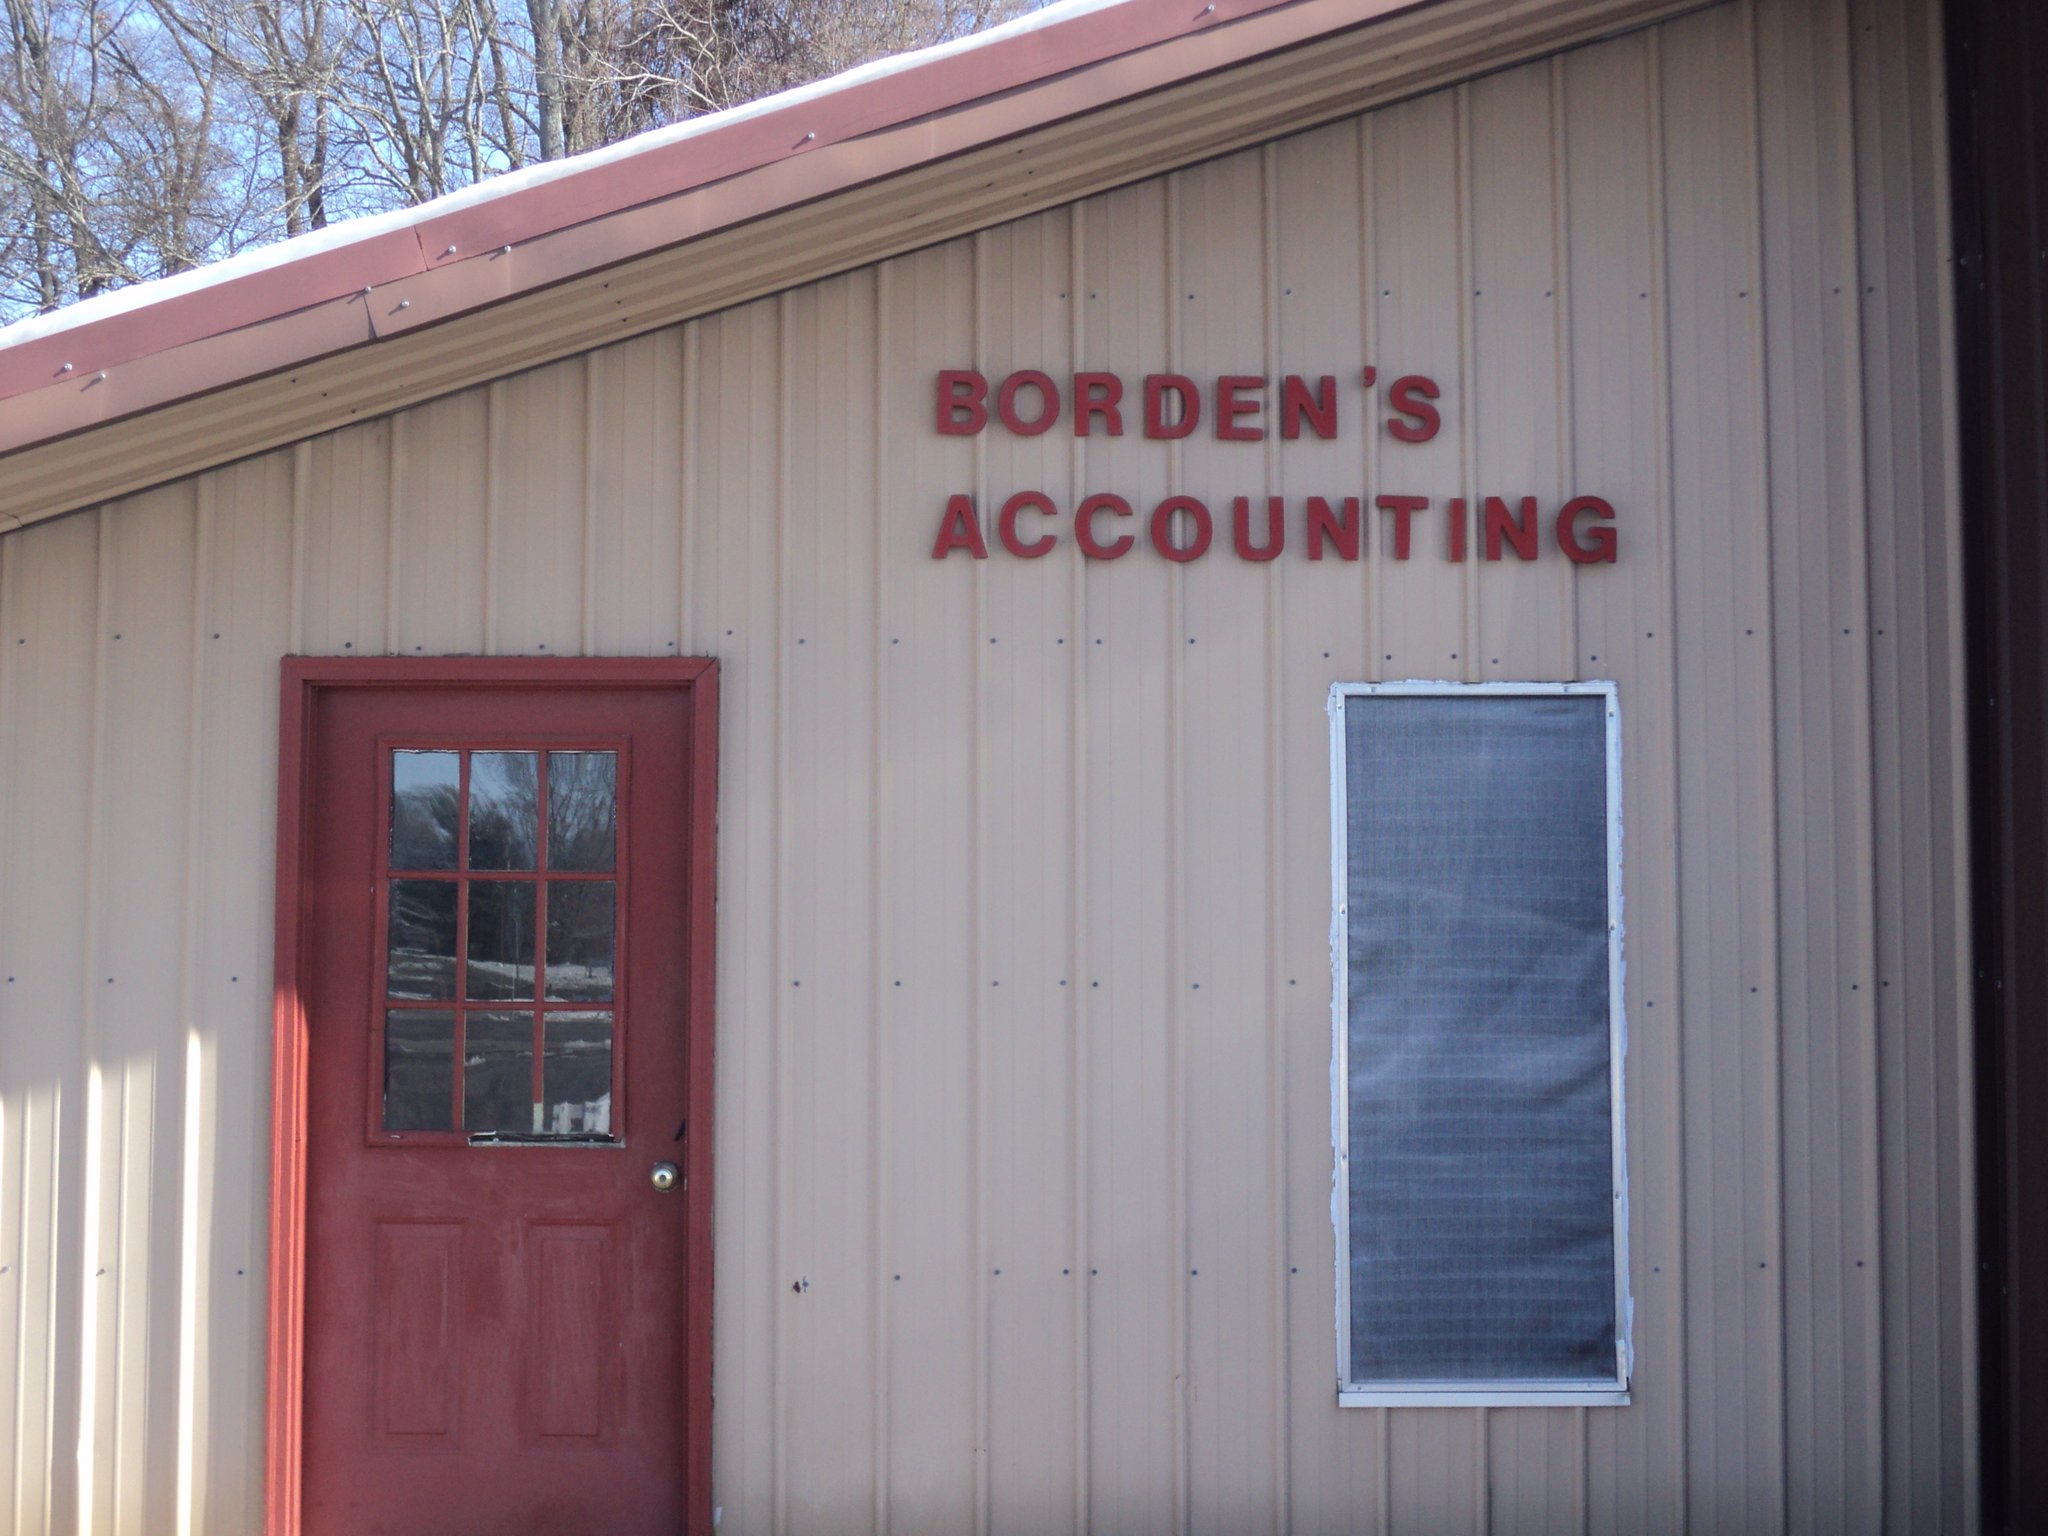 Borden's Income Tax Services 11750 AL-157, Moulton Alabama 35650